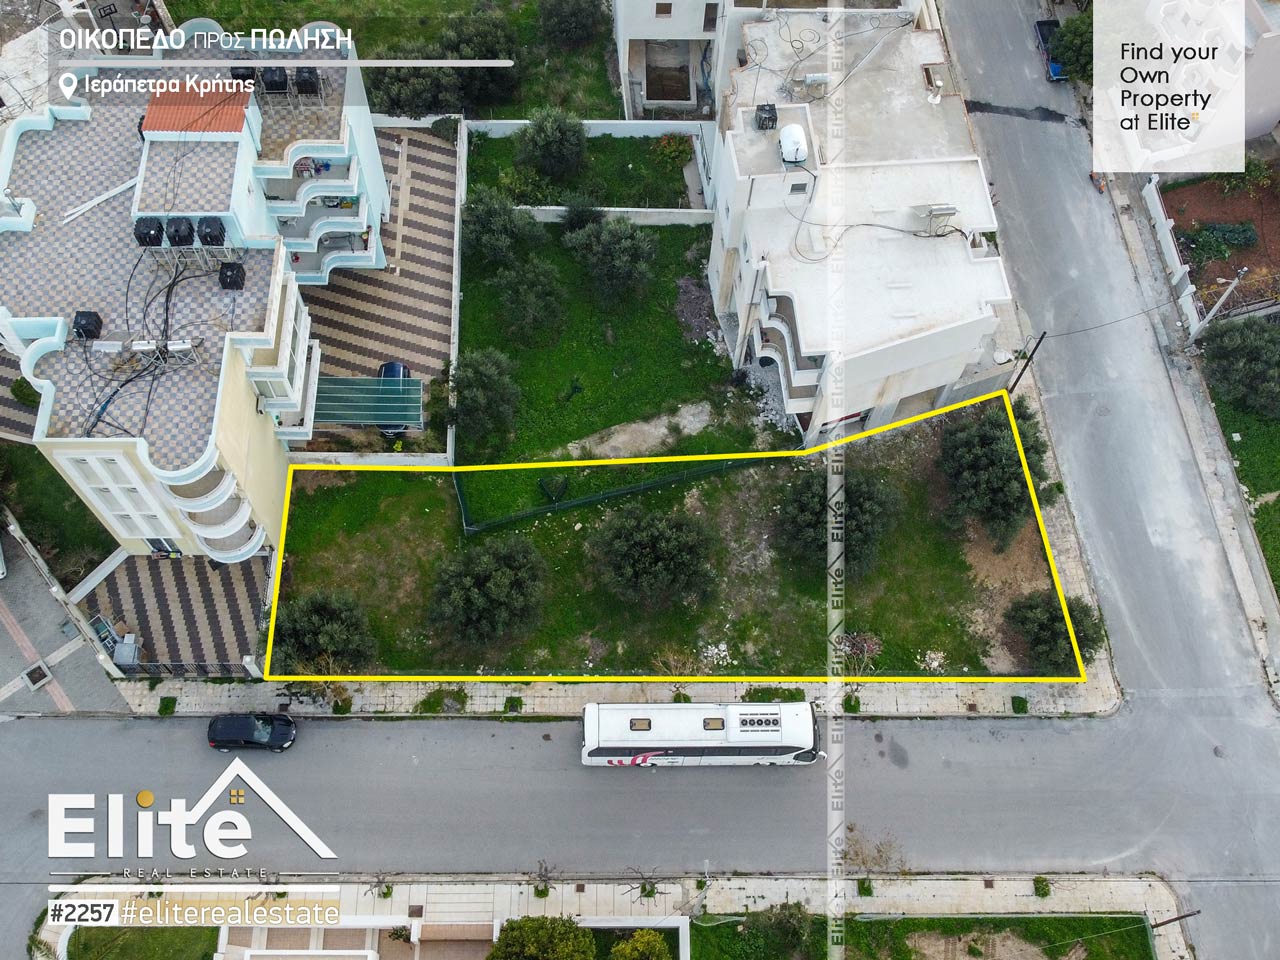 Land for sale in Ierapetra, Crete #2257 | ELITE REAL ESTATE